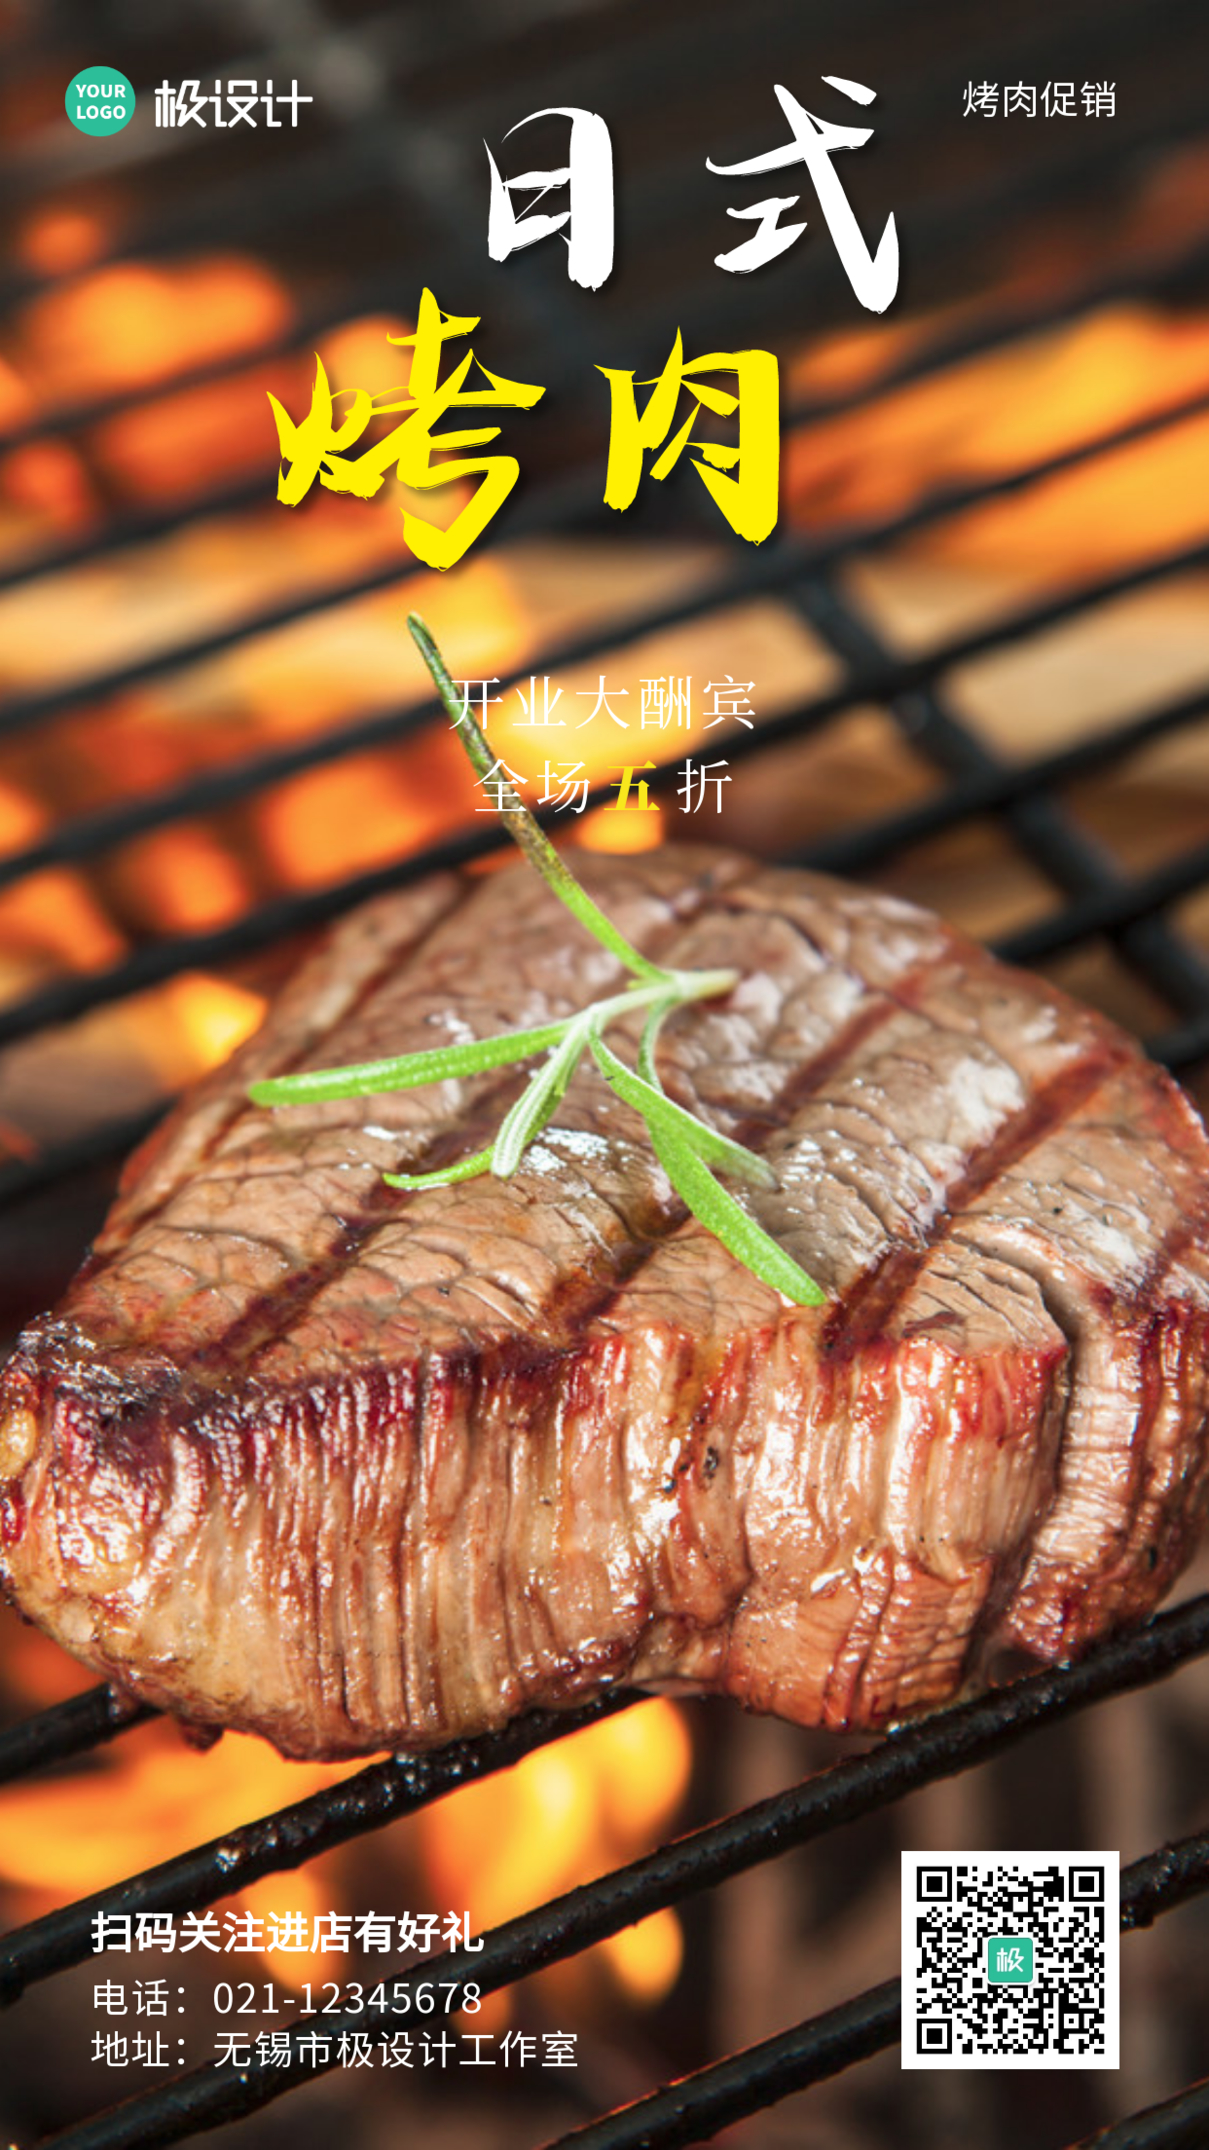 日式烤肉开业福利深色摄影营销手机海报